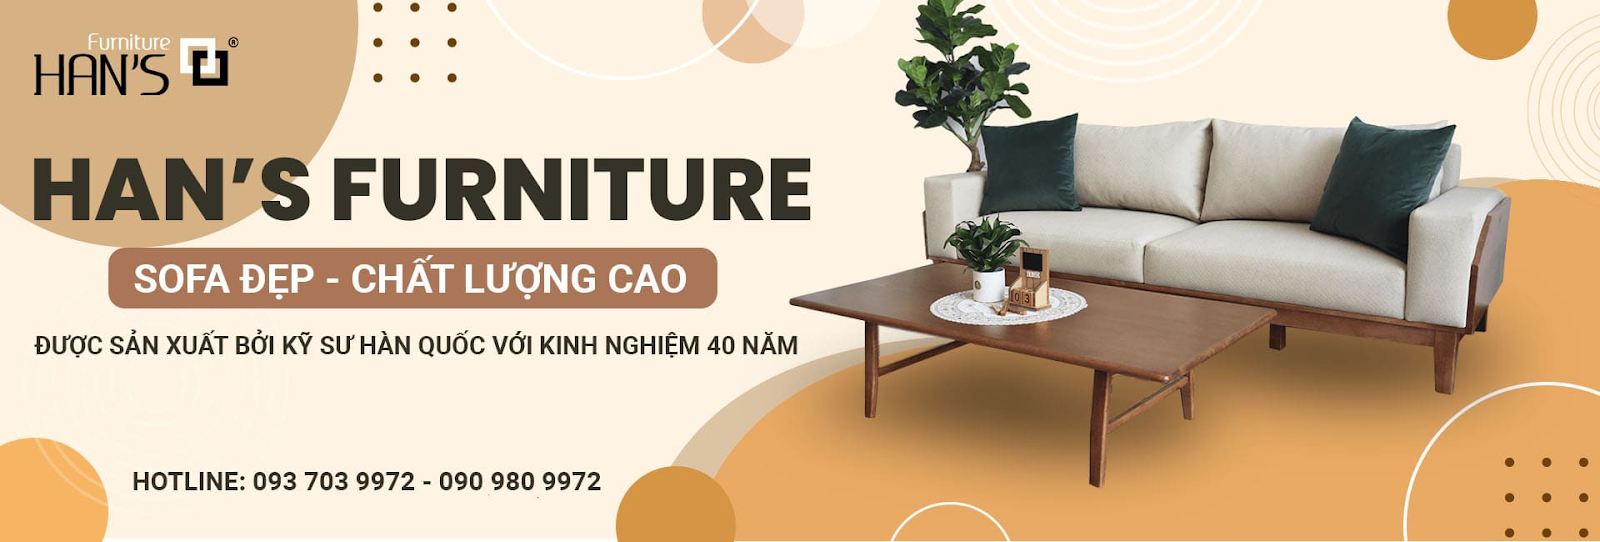 Han's Furniture - Đơn vị cung cấp ghế sofa da đơn uy tín